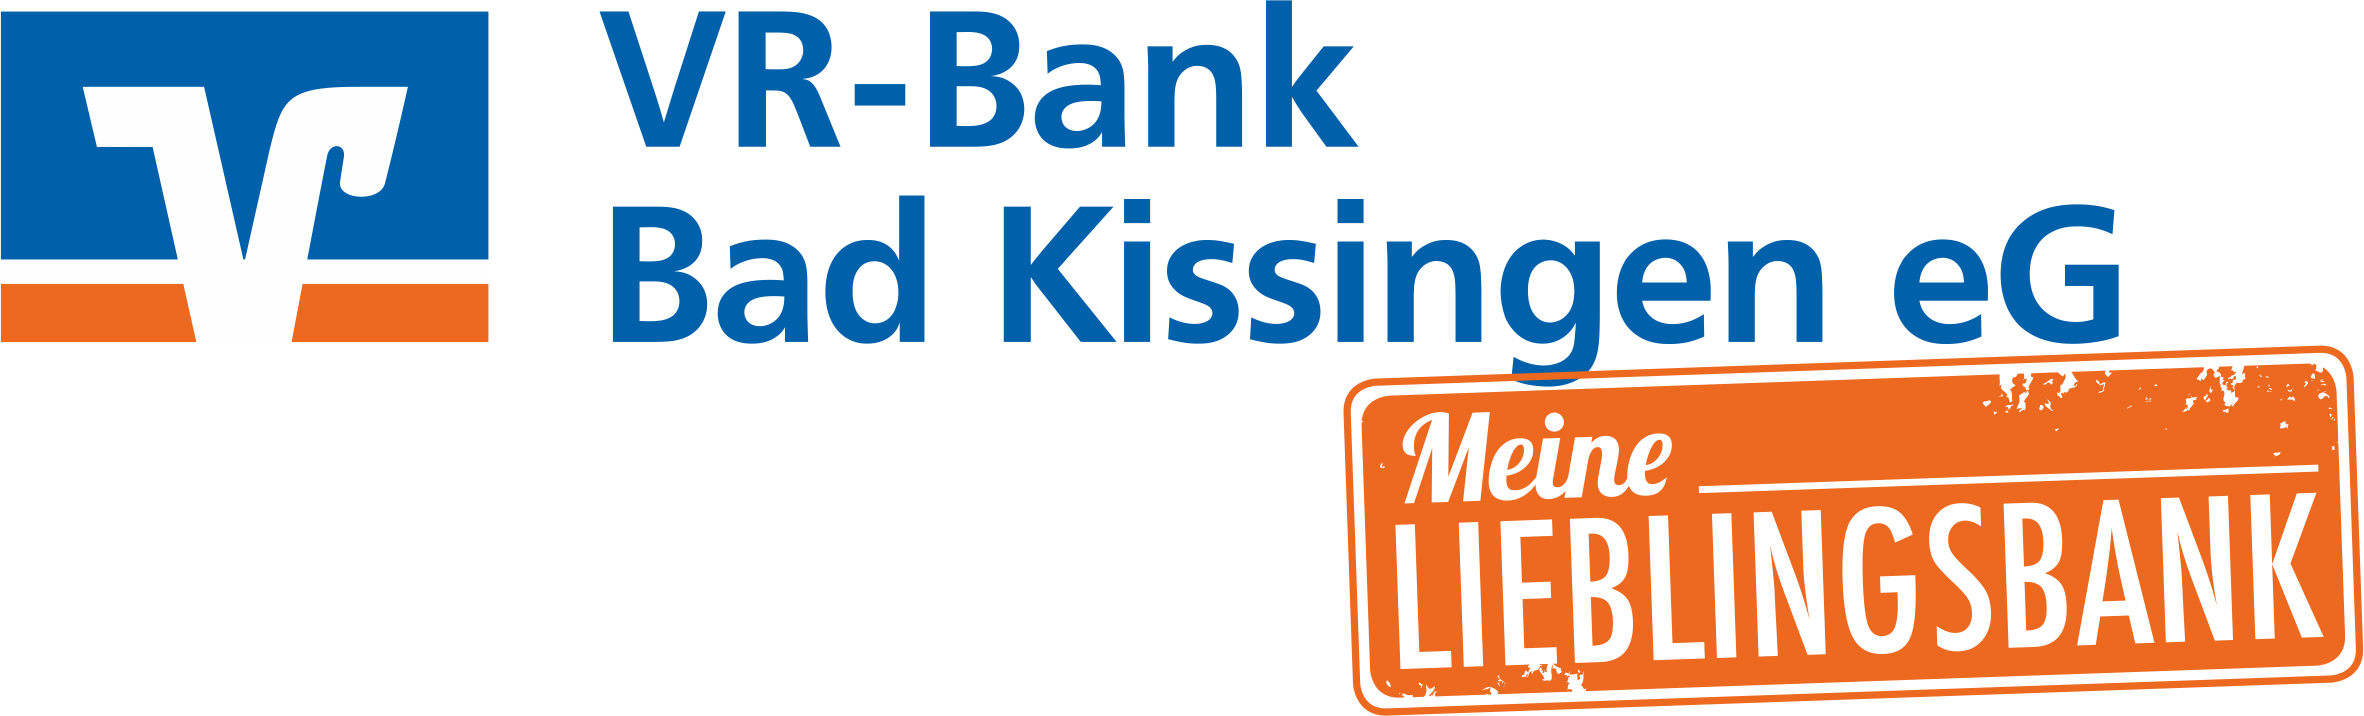 VR-Bank Bad Kissingen